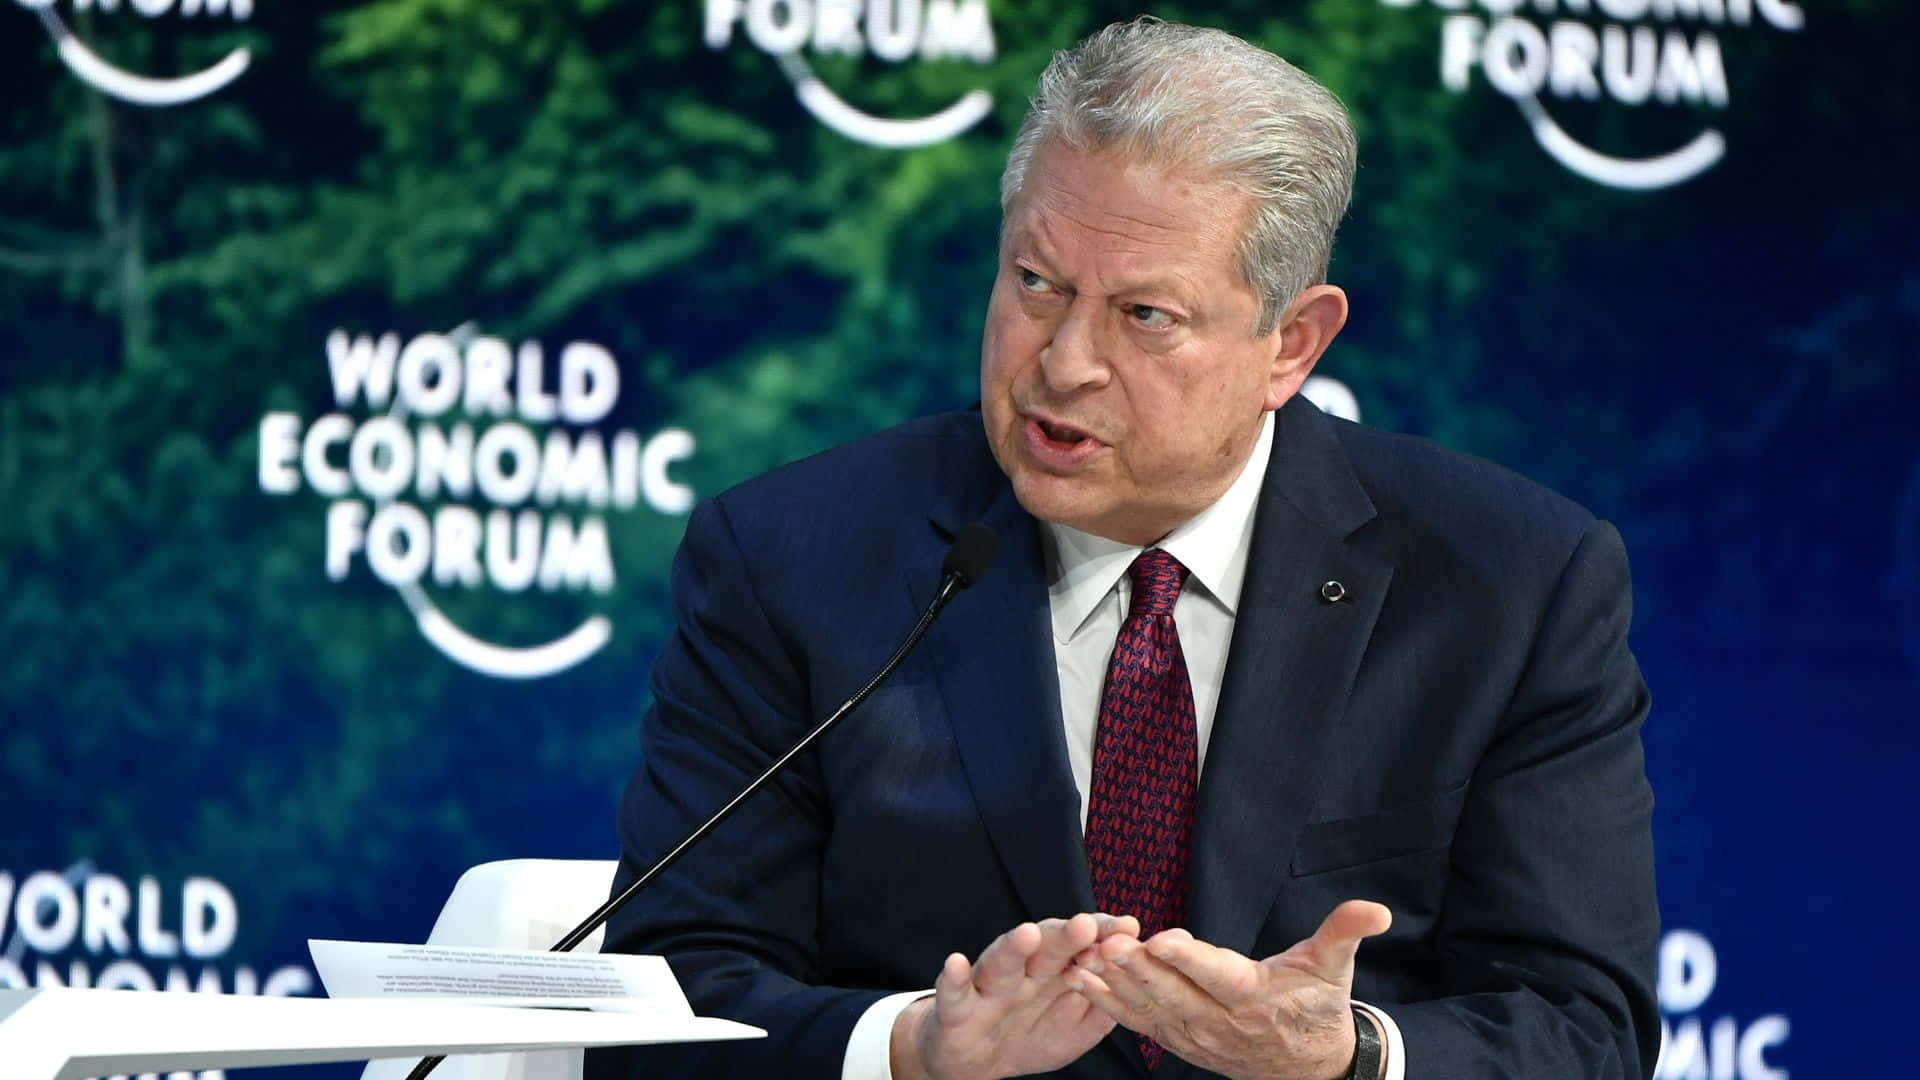 Al Gore At The World Economic Forum Wallpaper